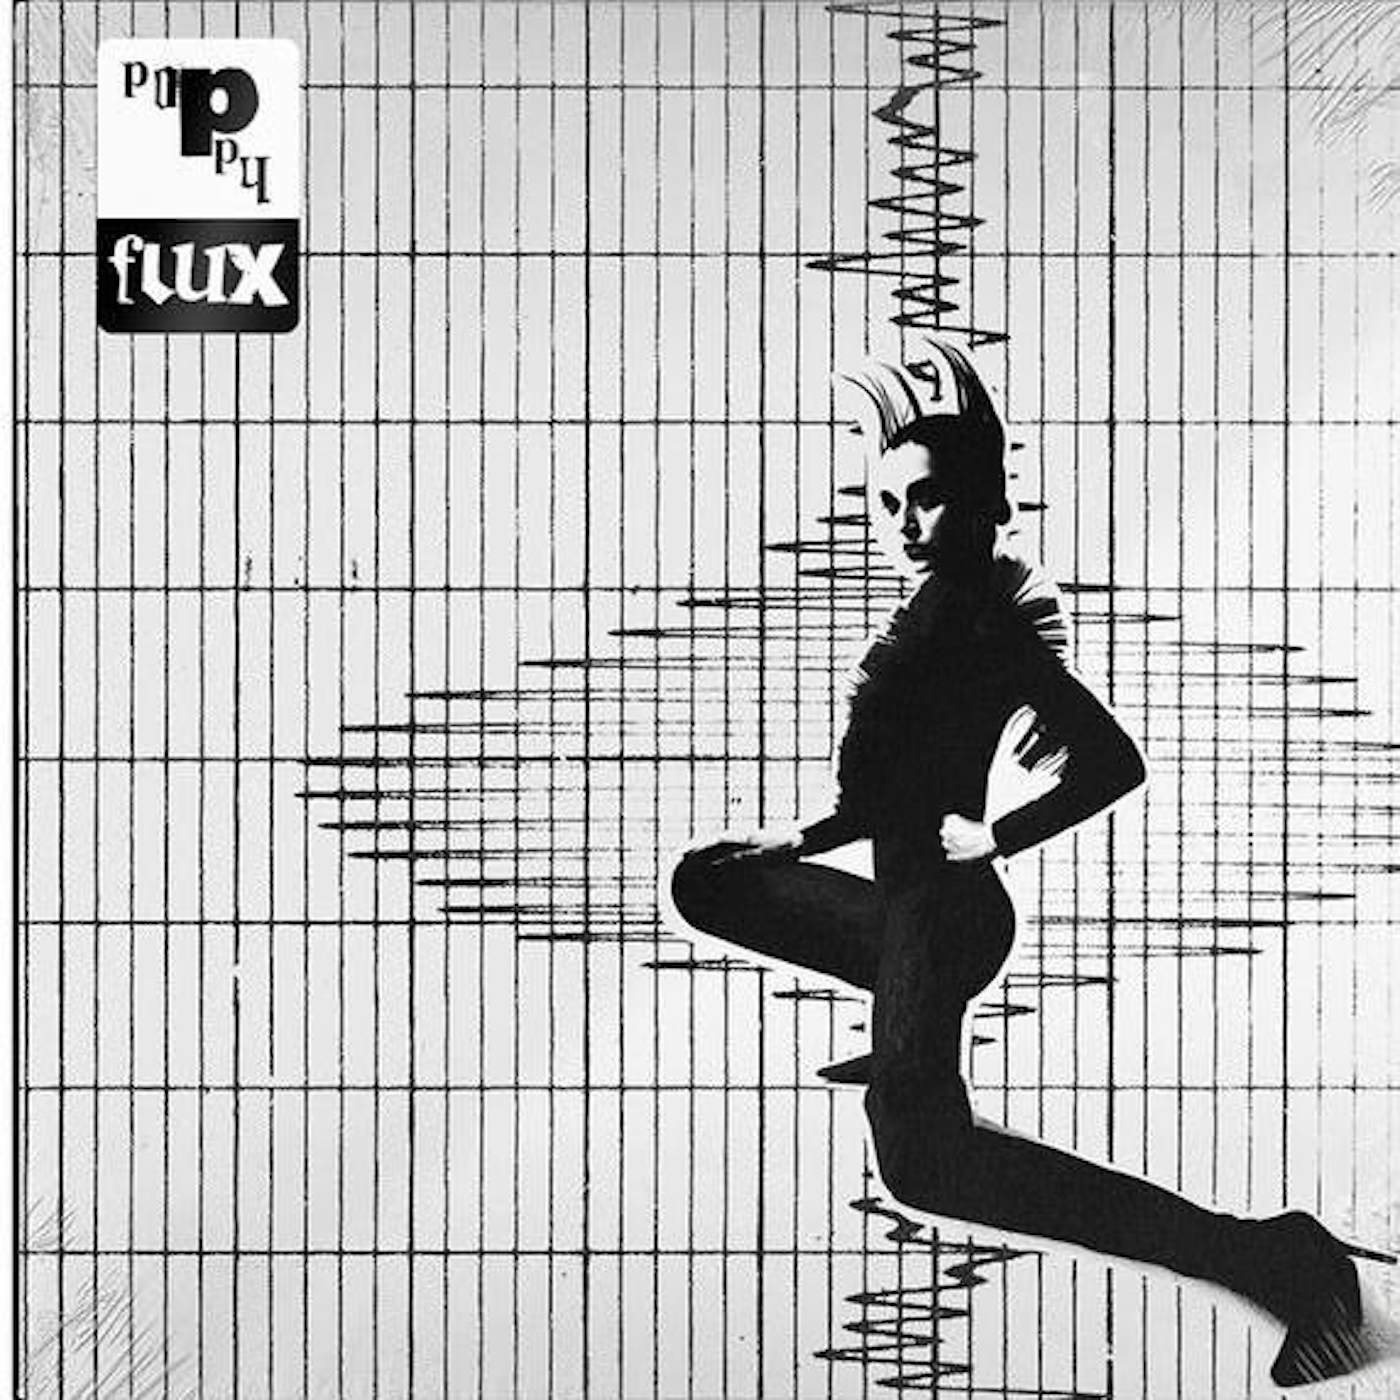 Poppy Flux Vinyl Record